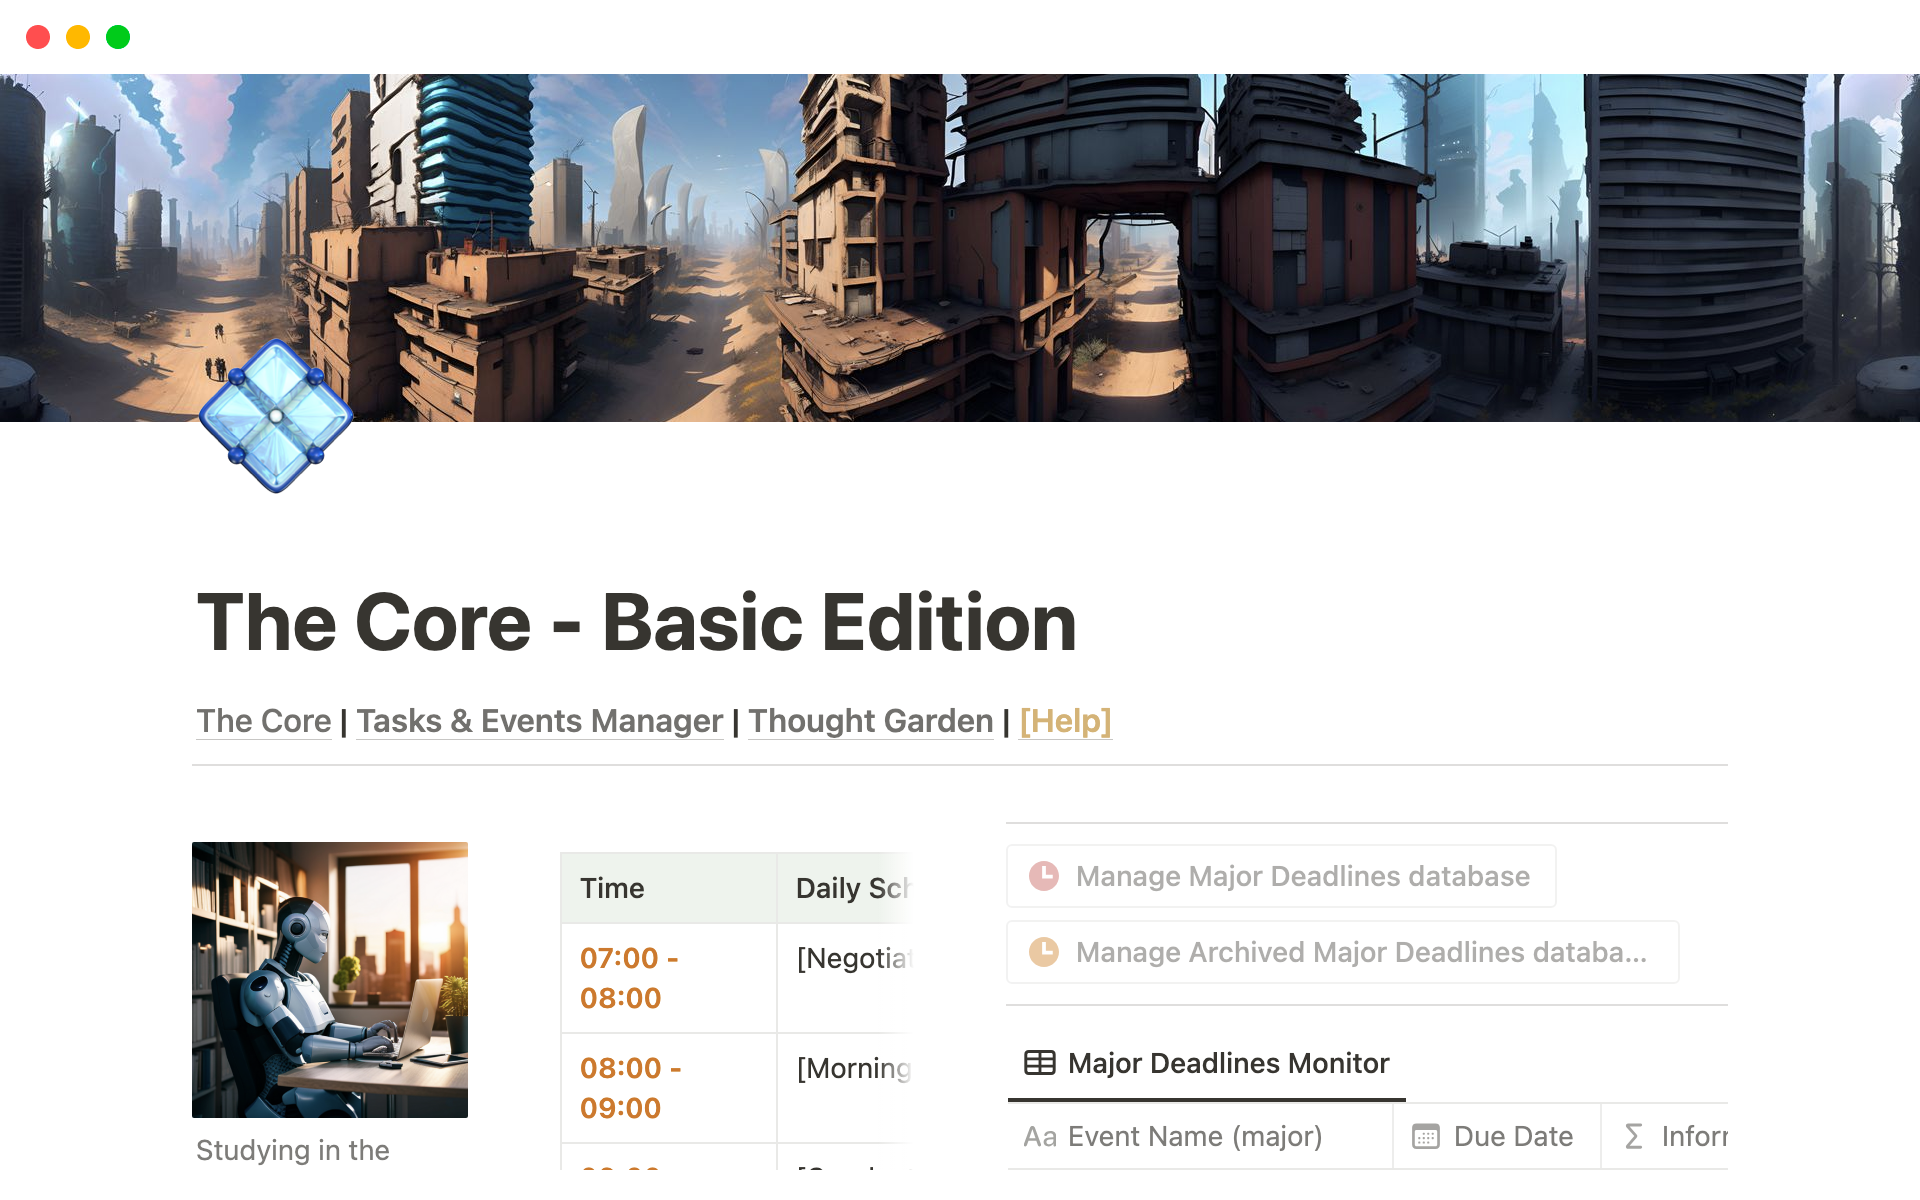 The Core - Basic Editionのテンプレートのプレビュー